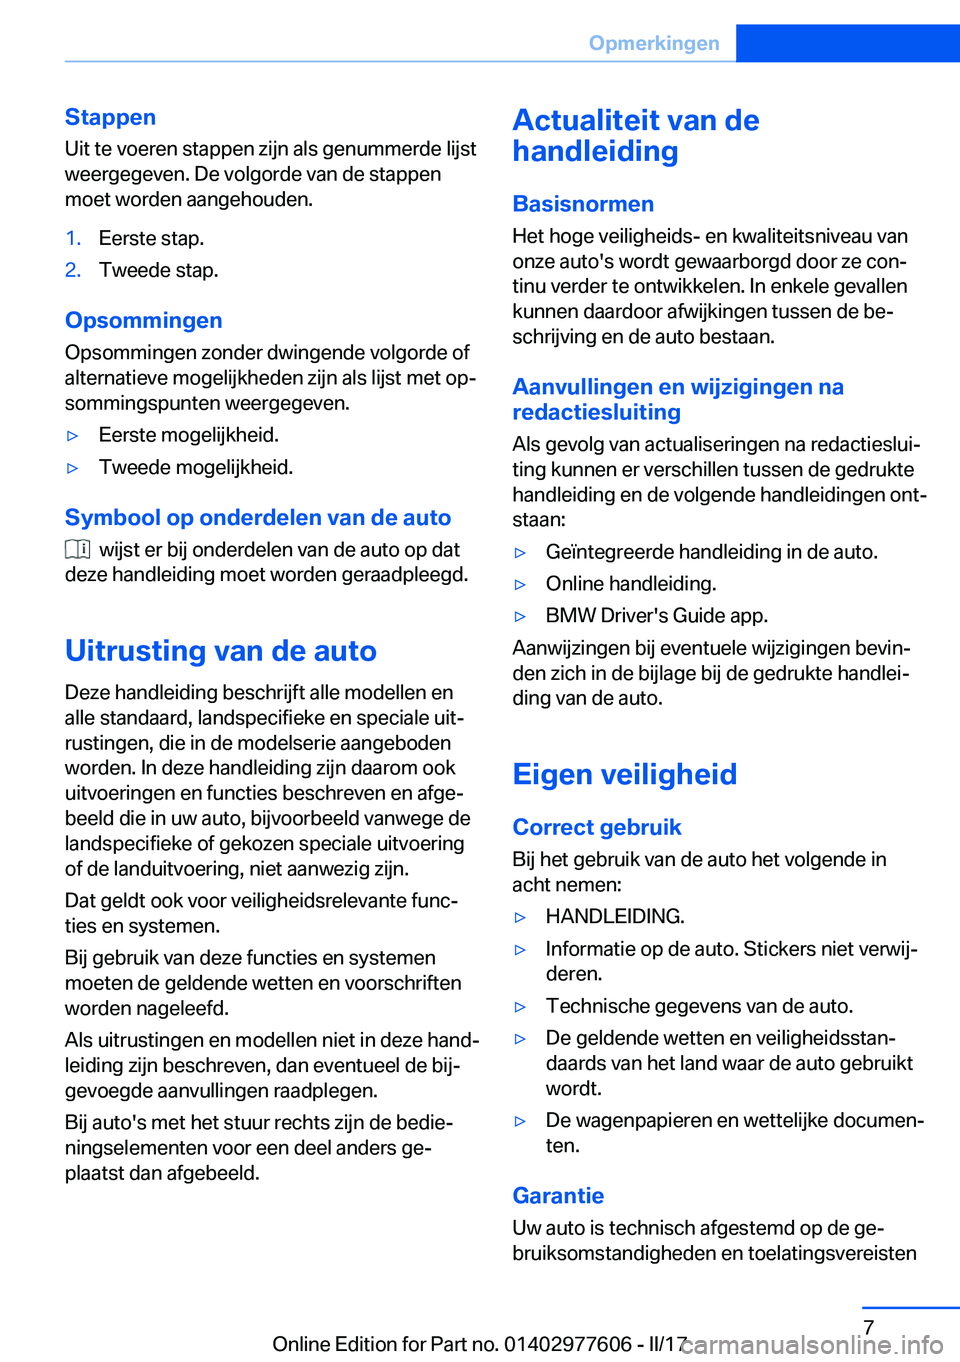 BMW X6 2017  Instructieboekjes (in Dutch) �S�t�a�p�p�e�n
�U�i�t� �t�e� �v�o�e�r�e�n� �s�t�a�p�p�e�n� �z�i�j�n� �a�l�s� �g�e�n�u�m�m�e�r�d�e� �l�i�j�s�t �w�e�e�r�g�e�g�e�v�e�n�.� �D�e� �v�o�l�g�o�r�d�e� �v�a�n� �d�e� �s�t�a�p�p�e�n�m�o�e�t� �w